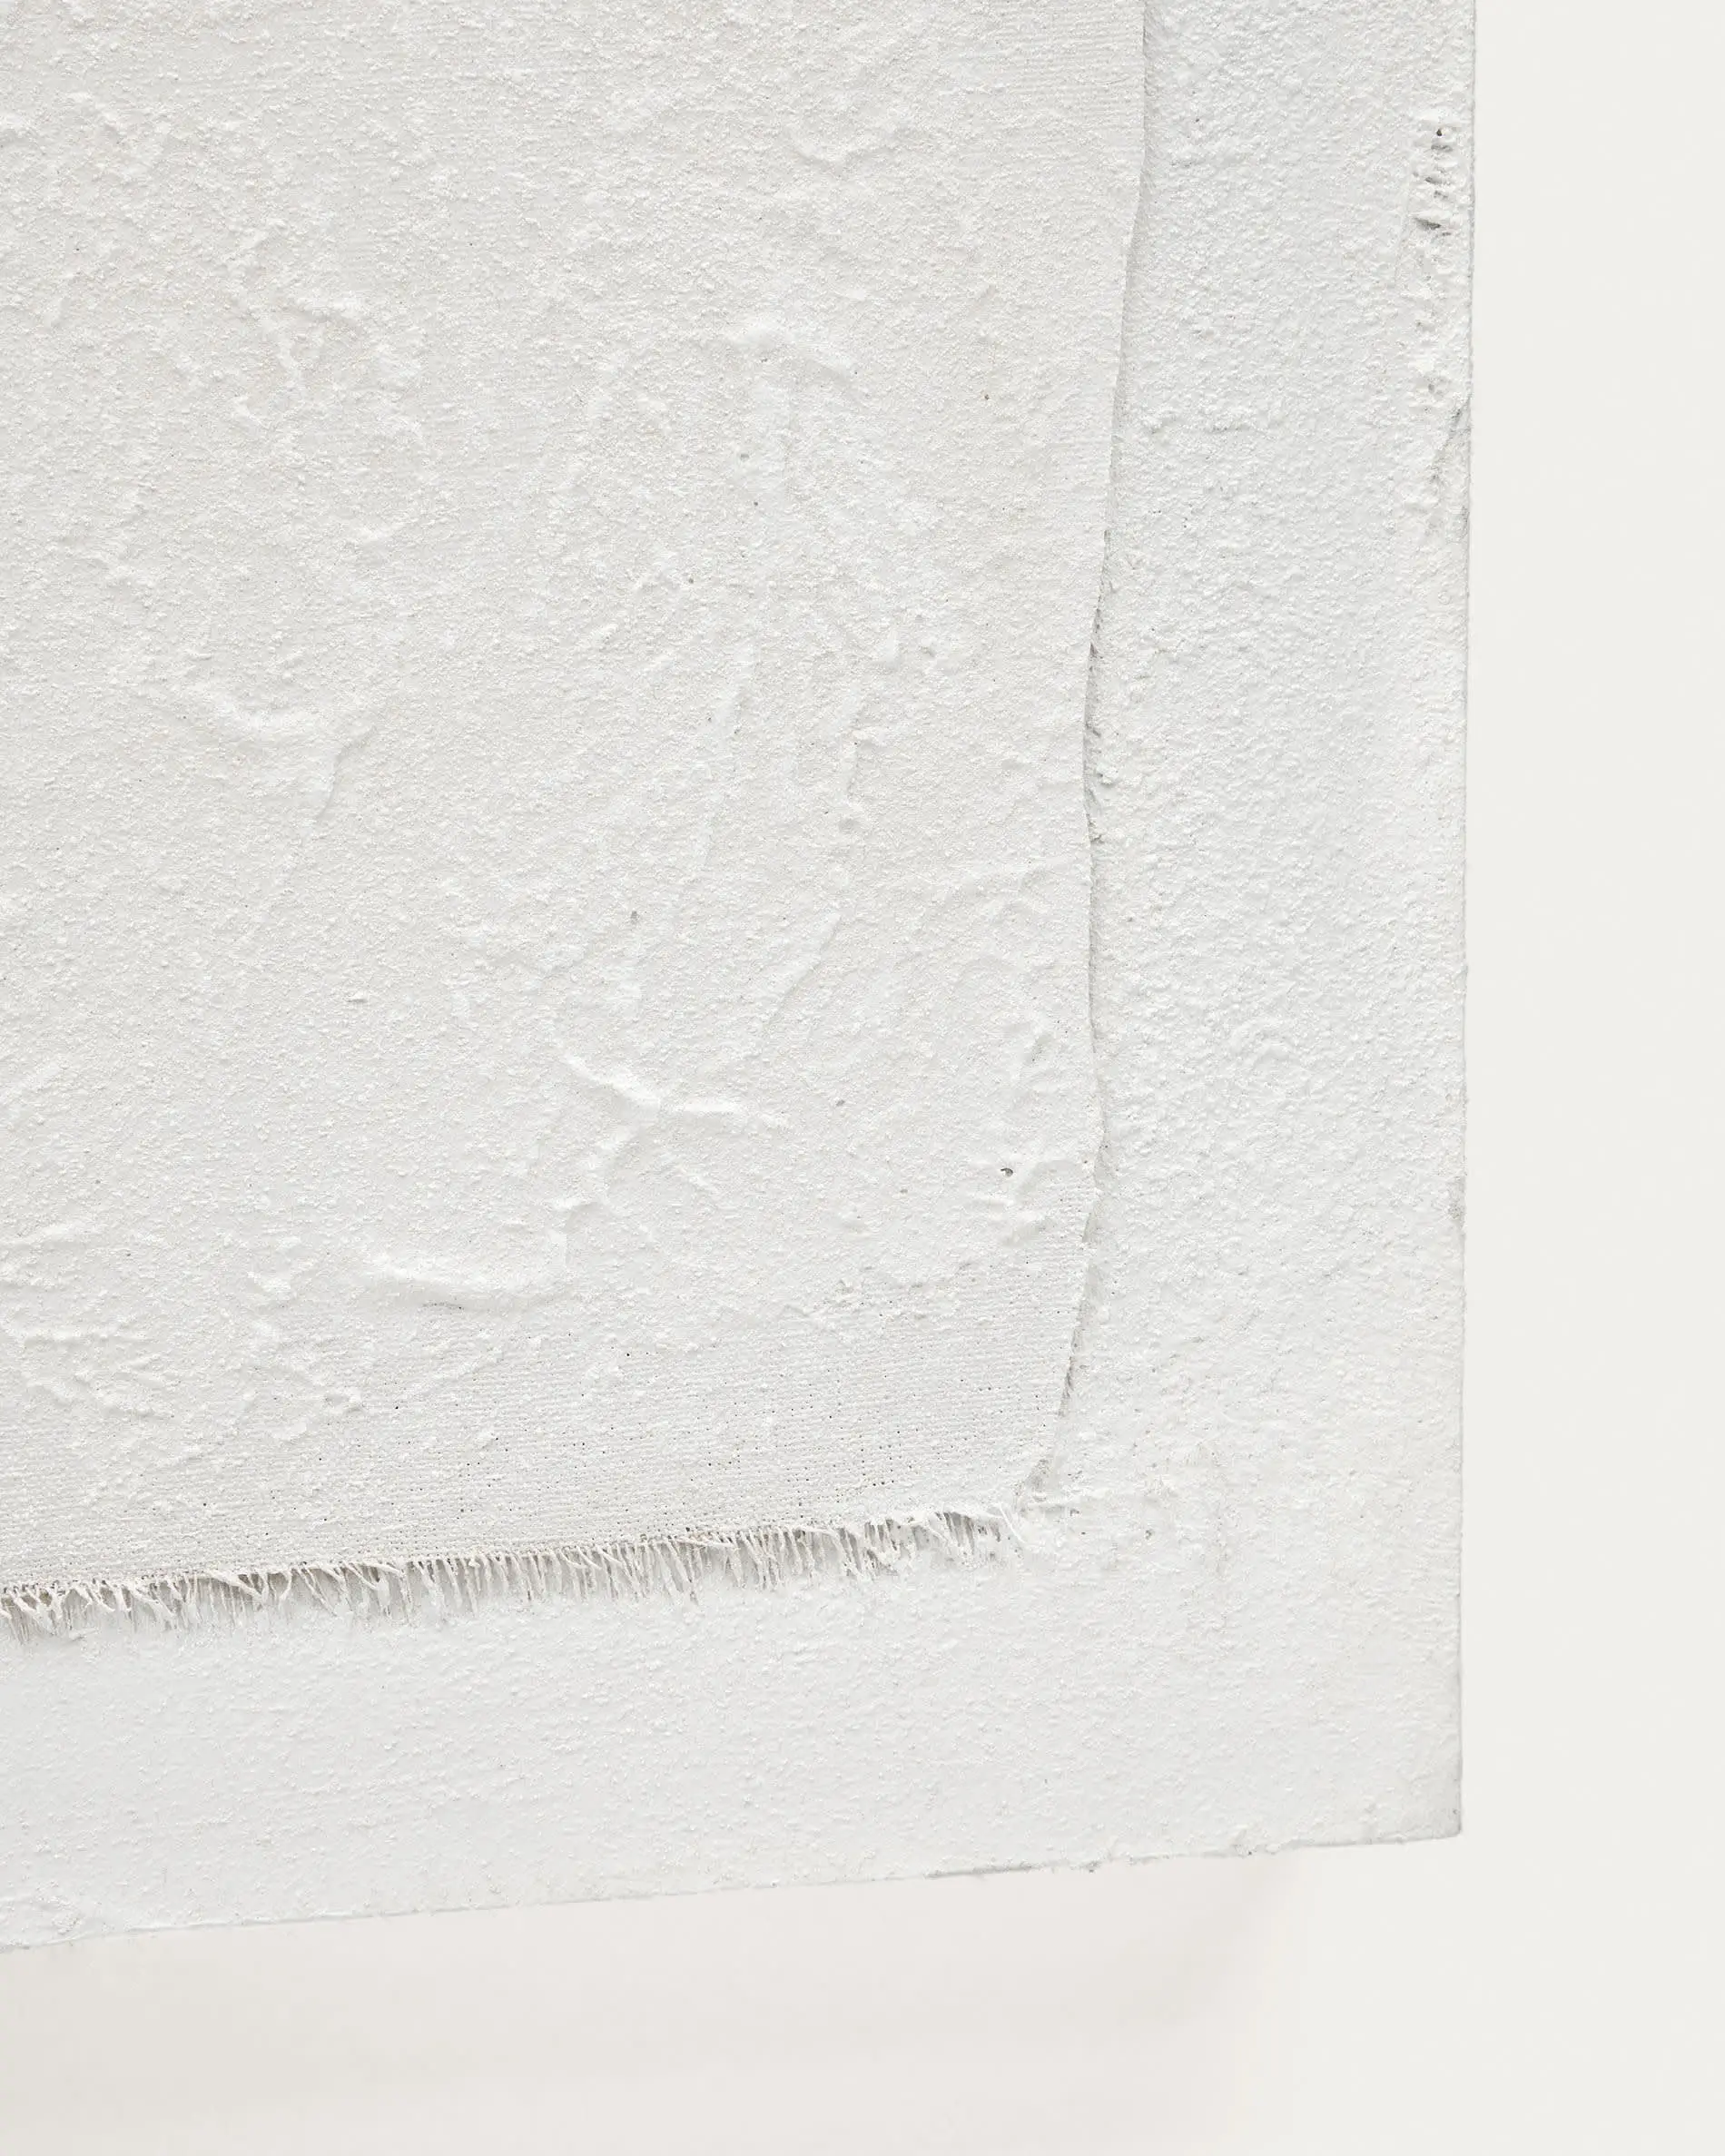 Rodes абстрактный фактурный холст белого цвета 80 x 100 см